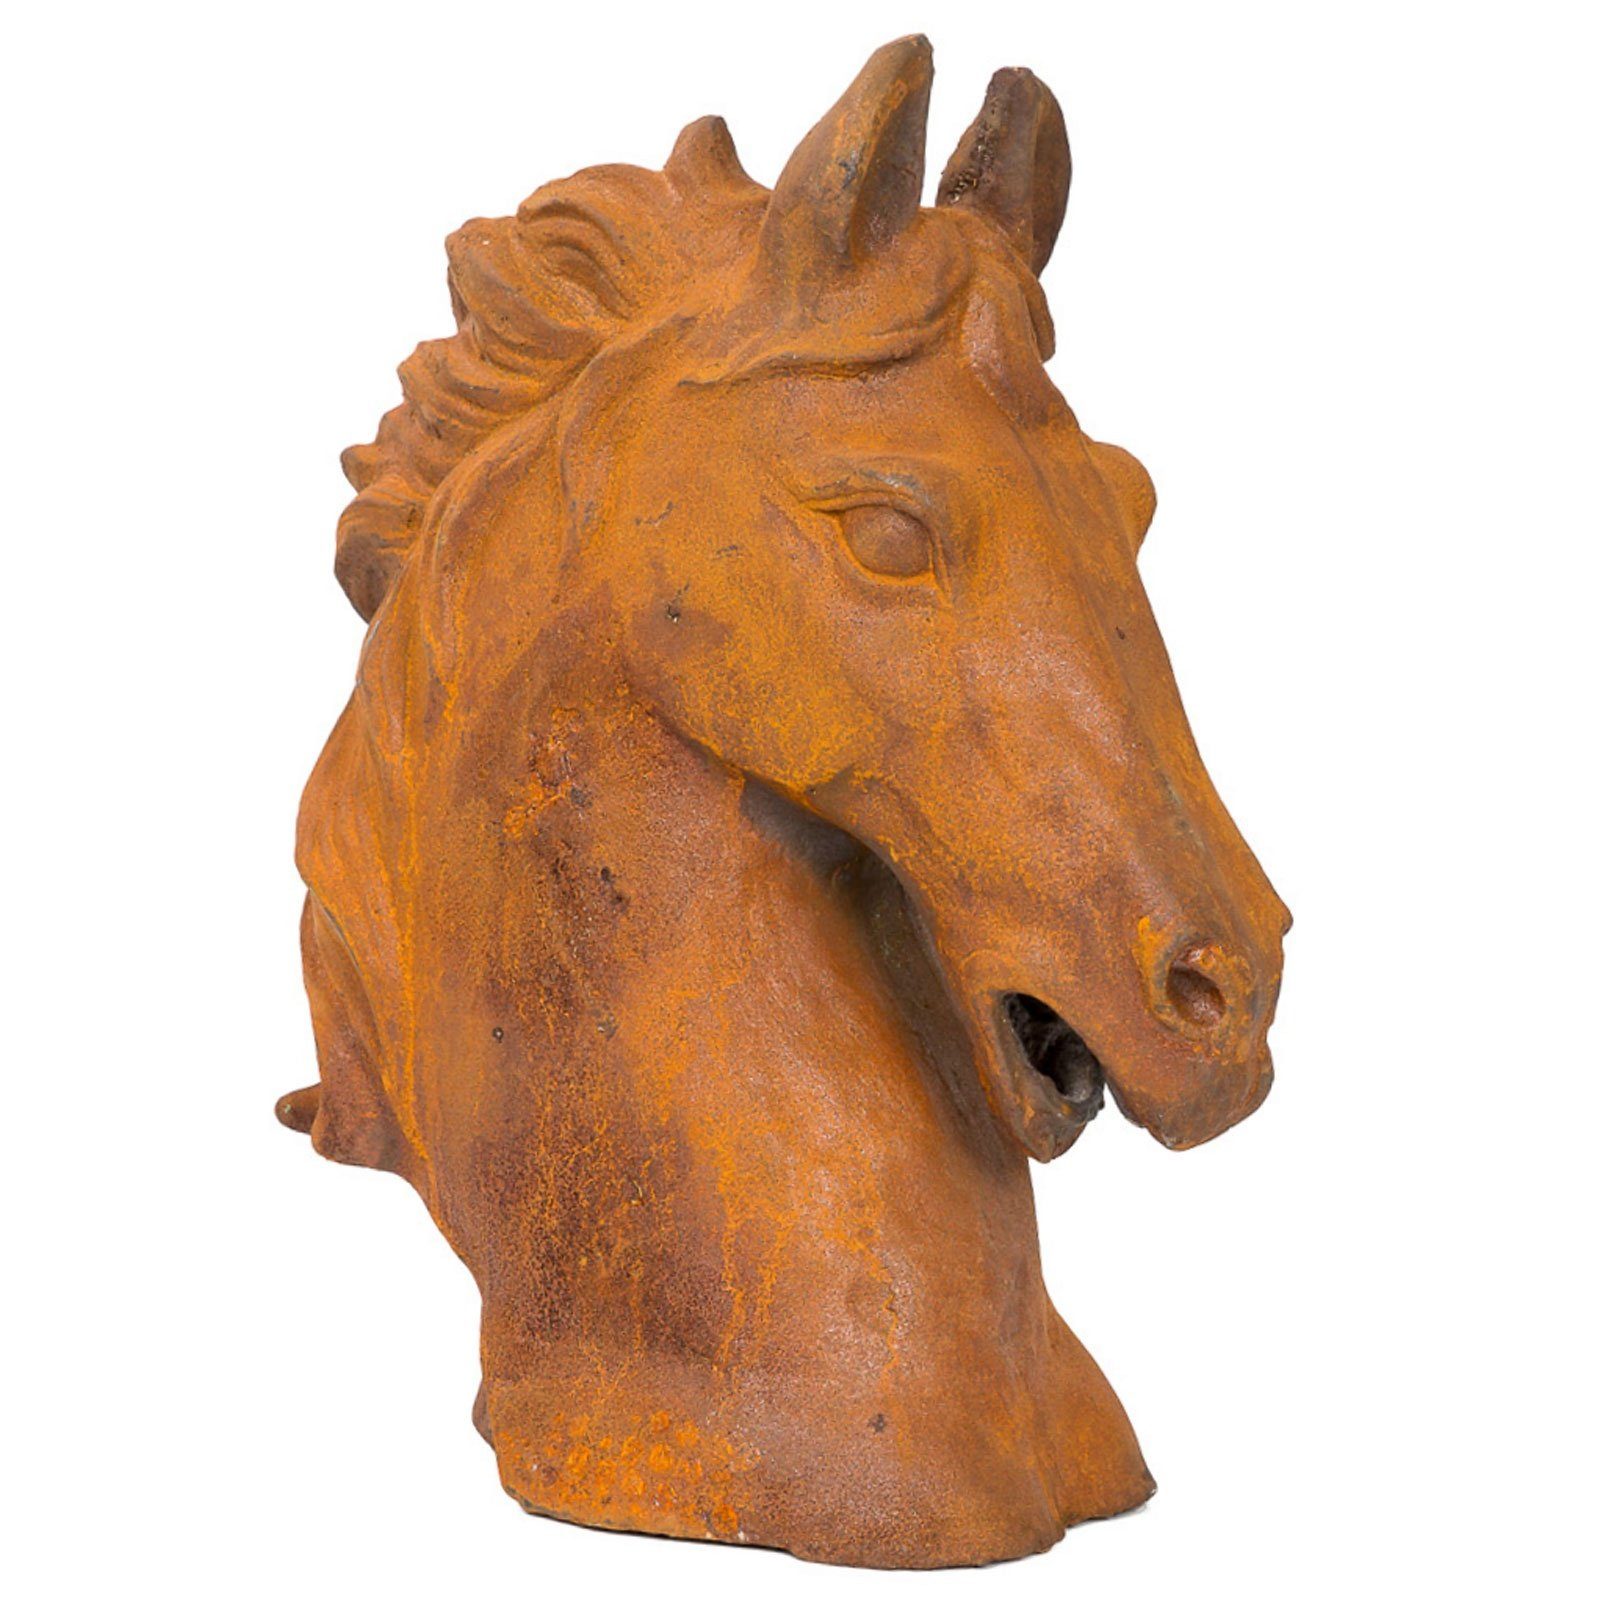 Aubaho Skulptur Pferd Horse Pferdekopf Figur 20 kg Gartenfigur Eisen iron sculpture Höhe